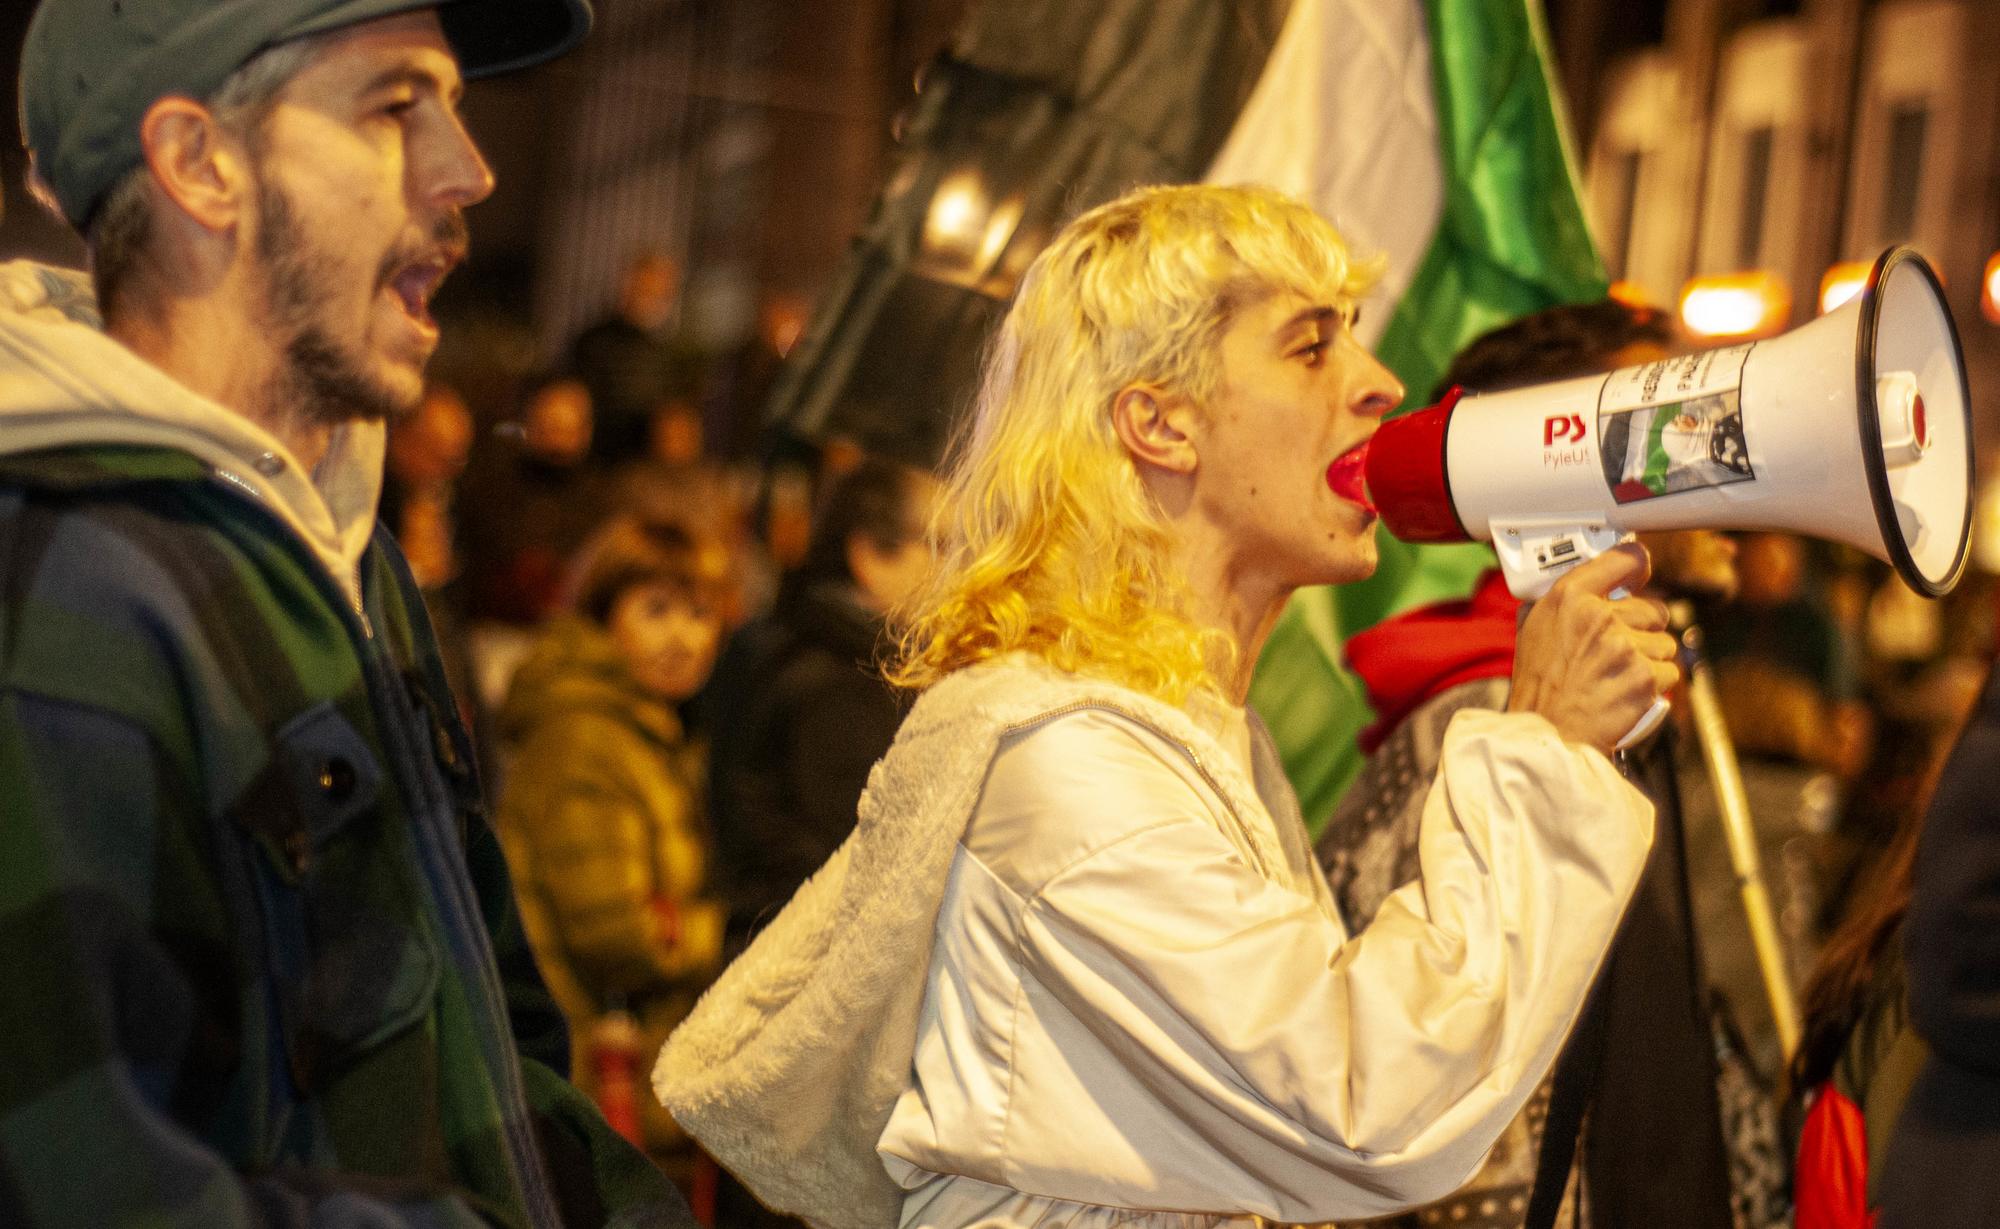 Manifestación palestina galiza 6 de novembro - 1